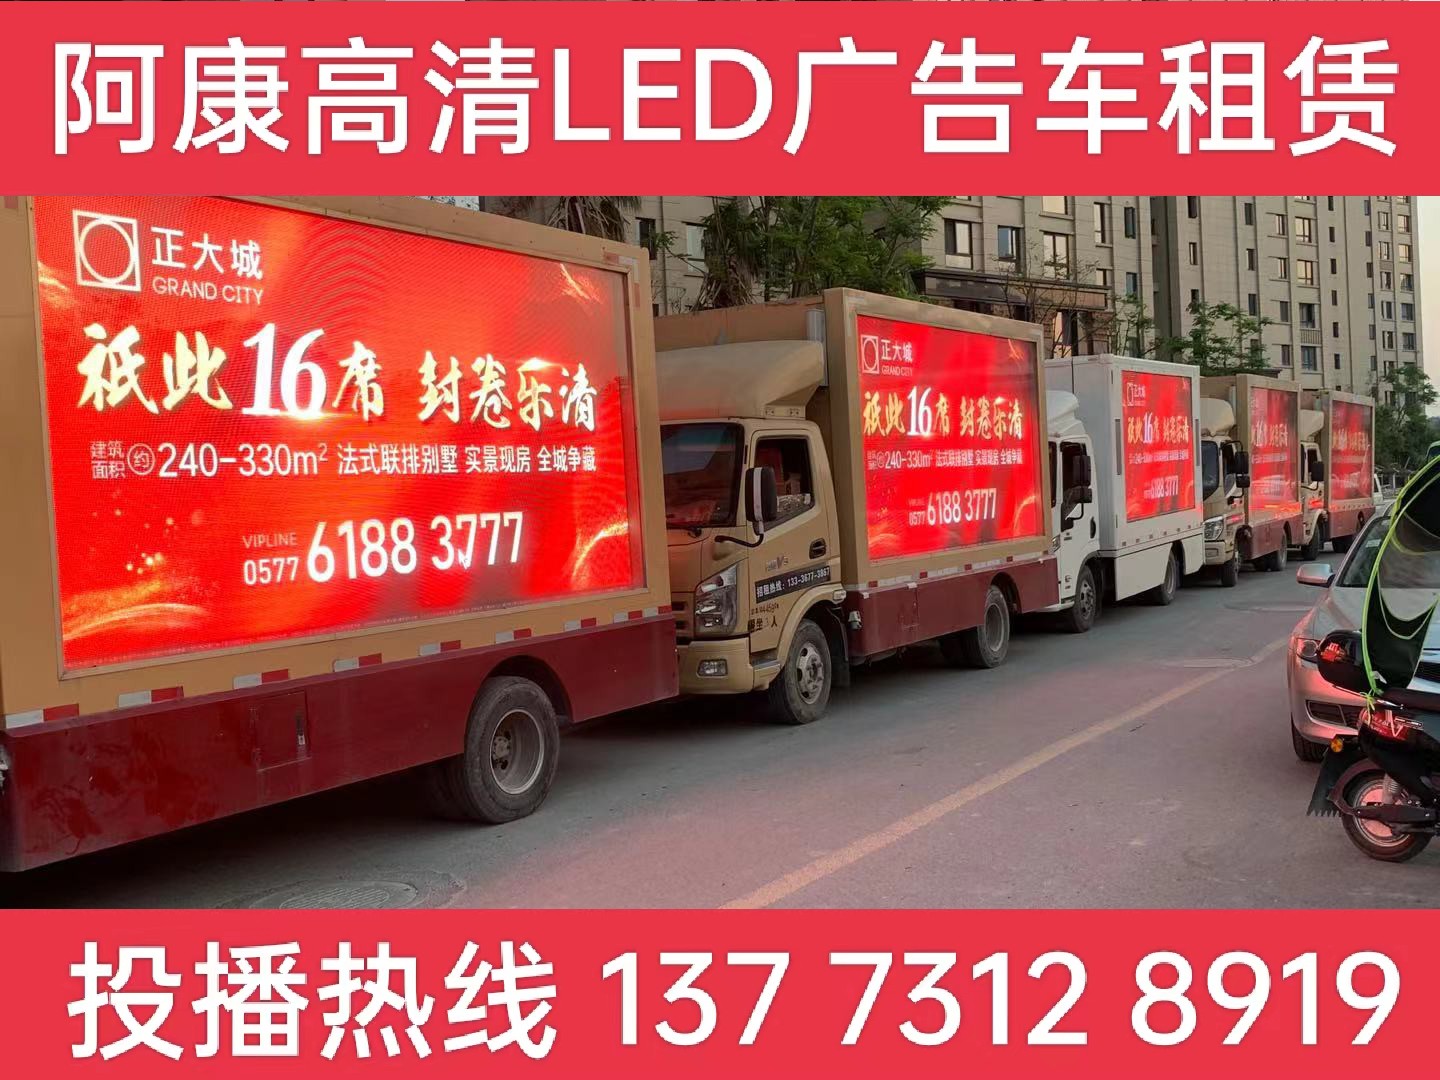 金坛LED广告车出租